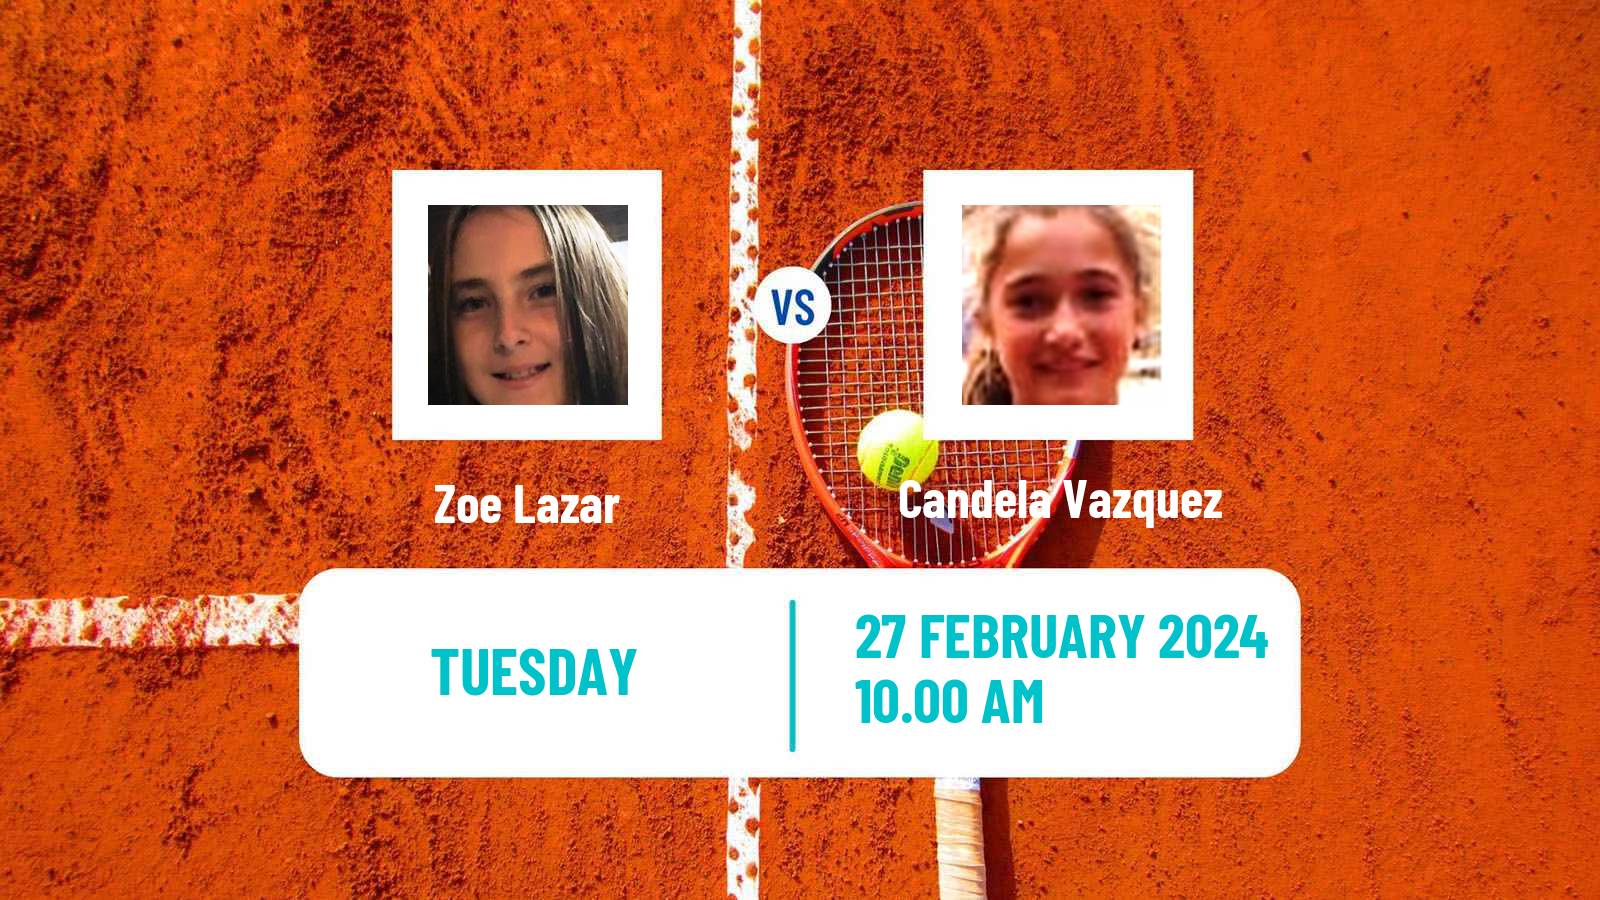 Tennis ITF W15 Tucuman Women Zoe Lazar - Candela Vazquez